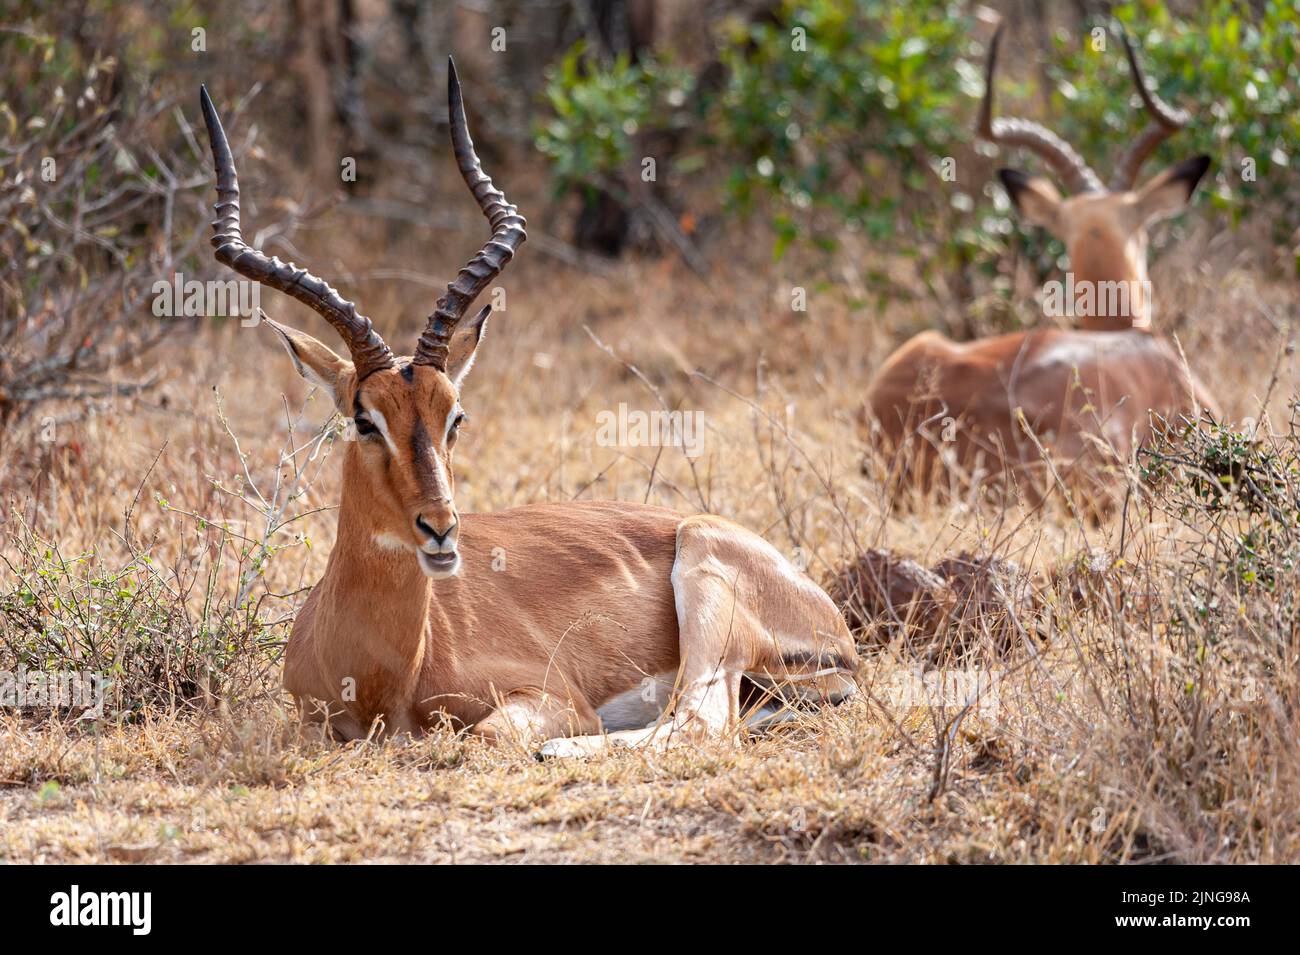 Zwei Impalas in ihrem wilden Lebensraum, Südafrika, Wildtierbeobachtung Stockfoto